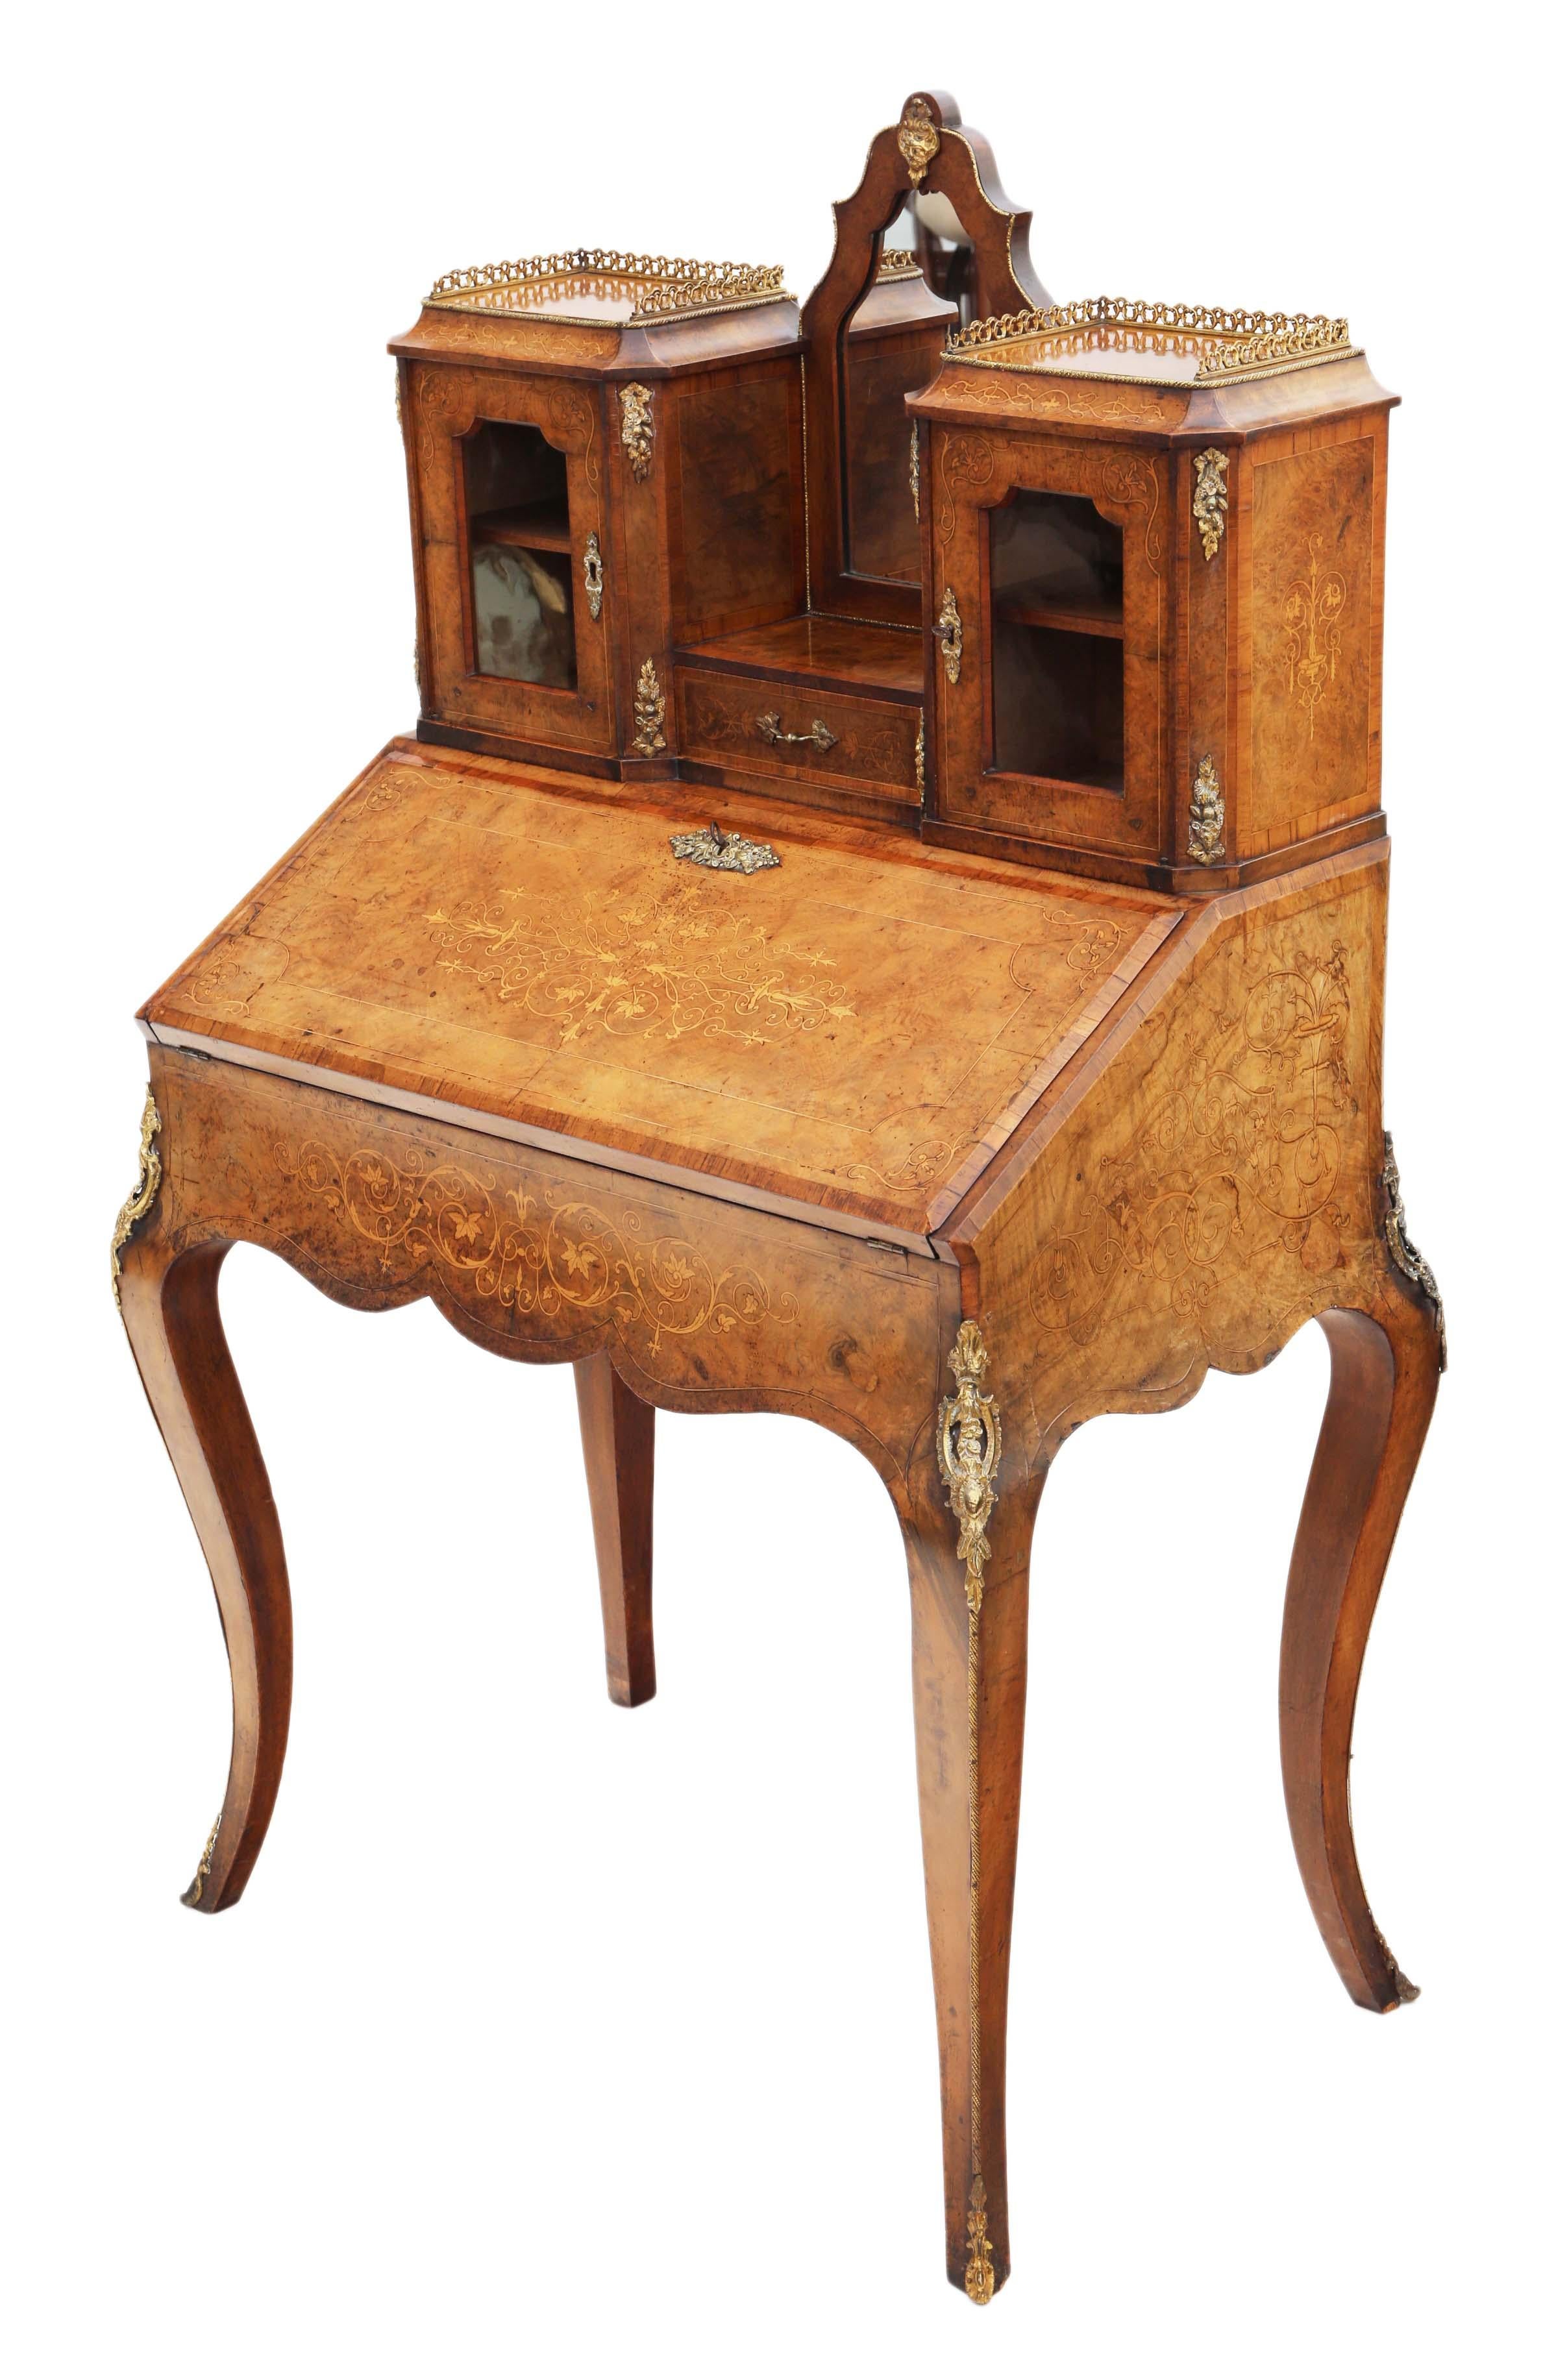 Antique Fine Quality Inlaid Burr Walnut Bonheur De Jour Desk Writing Table For Sale 2